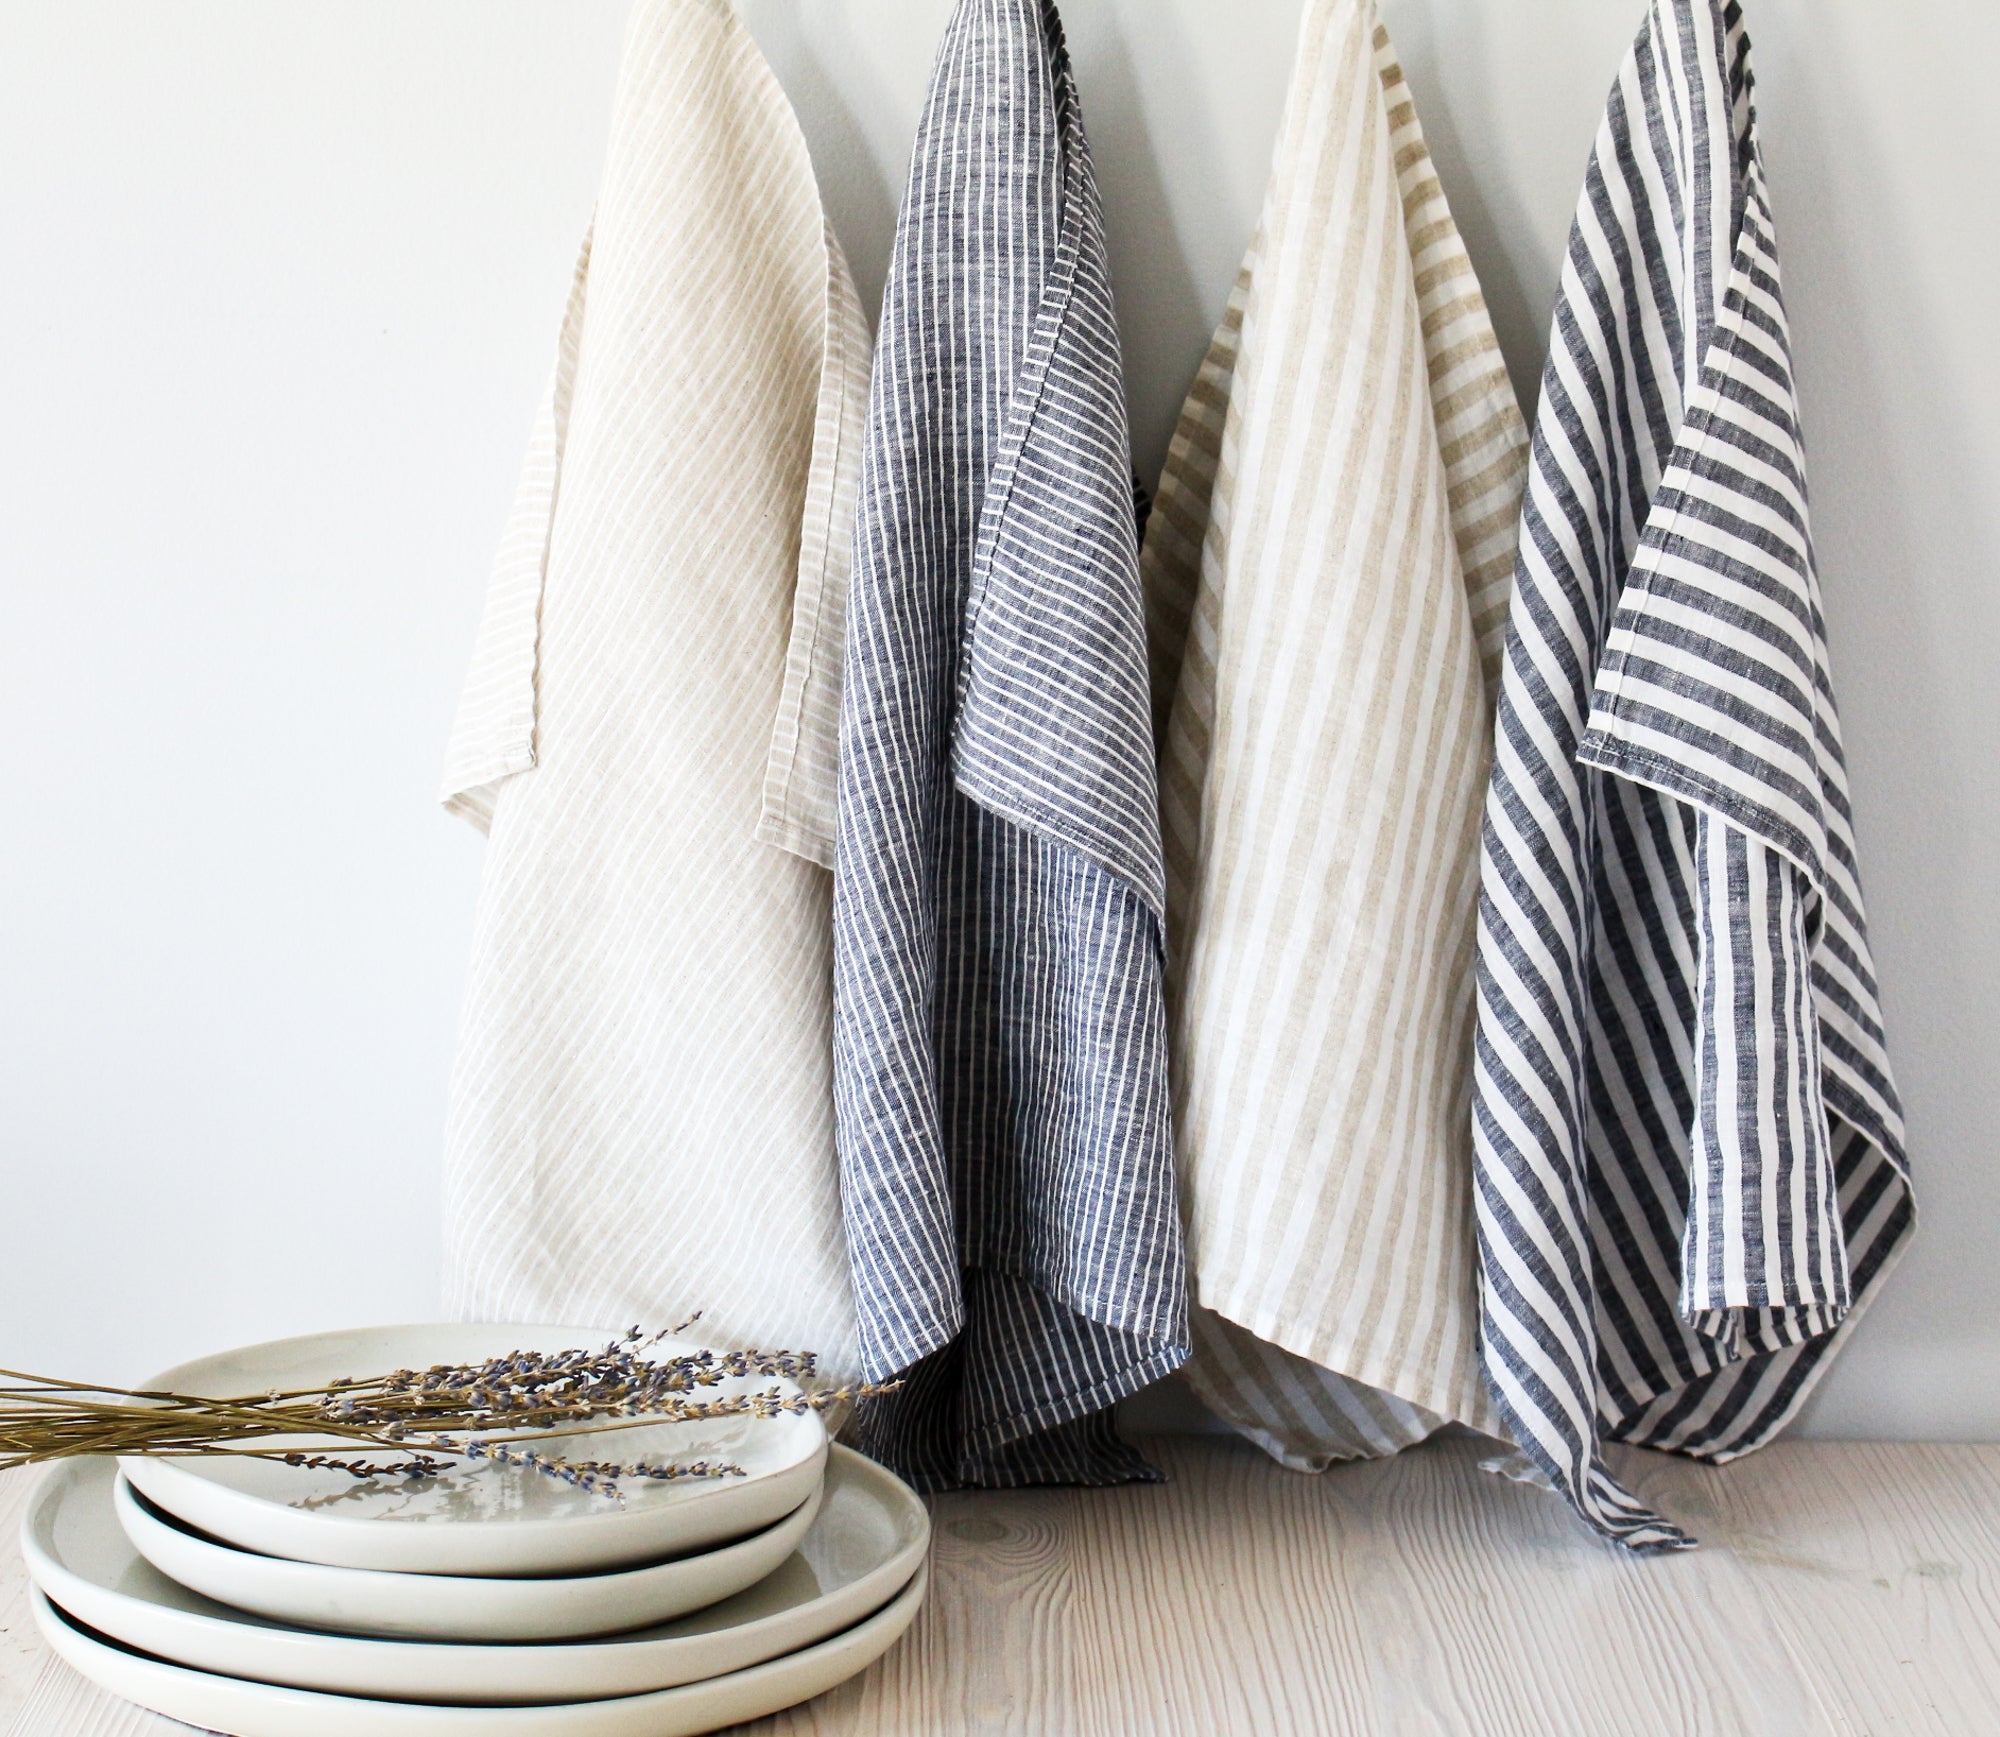  Pure 100% Linen Dish Towels - Set of 2 Linen Kitchen